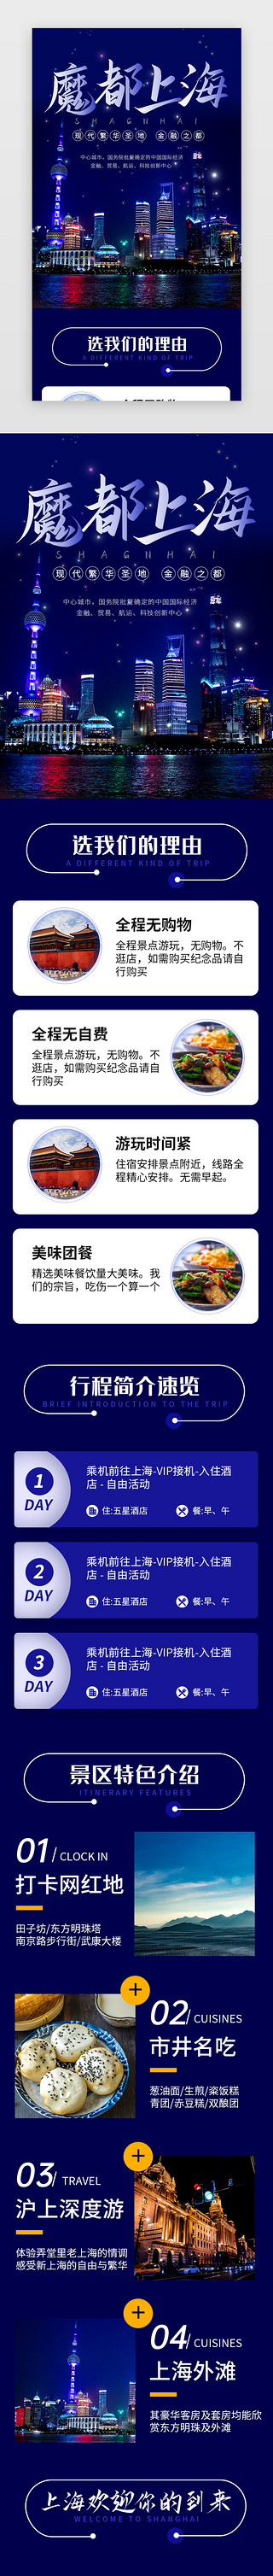 版本介绍UI设计素材_蓝色魔都上海旅行景点介绍H5长图海报